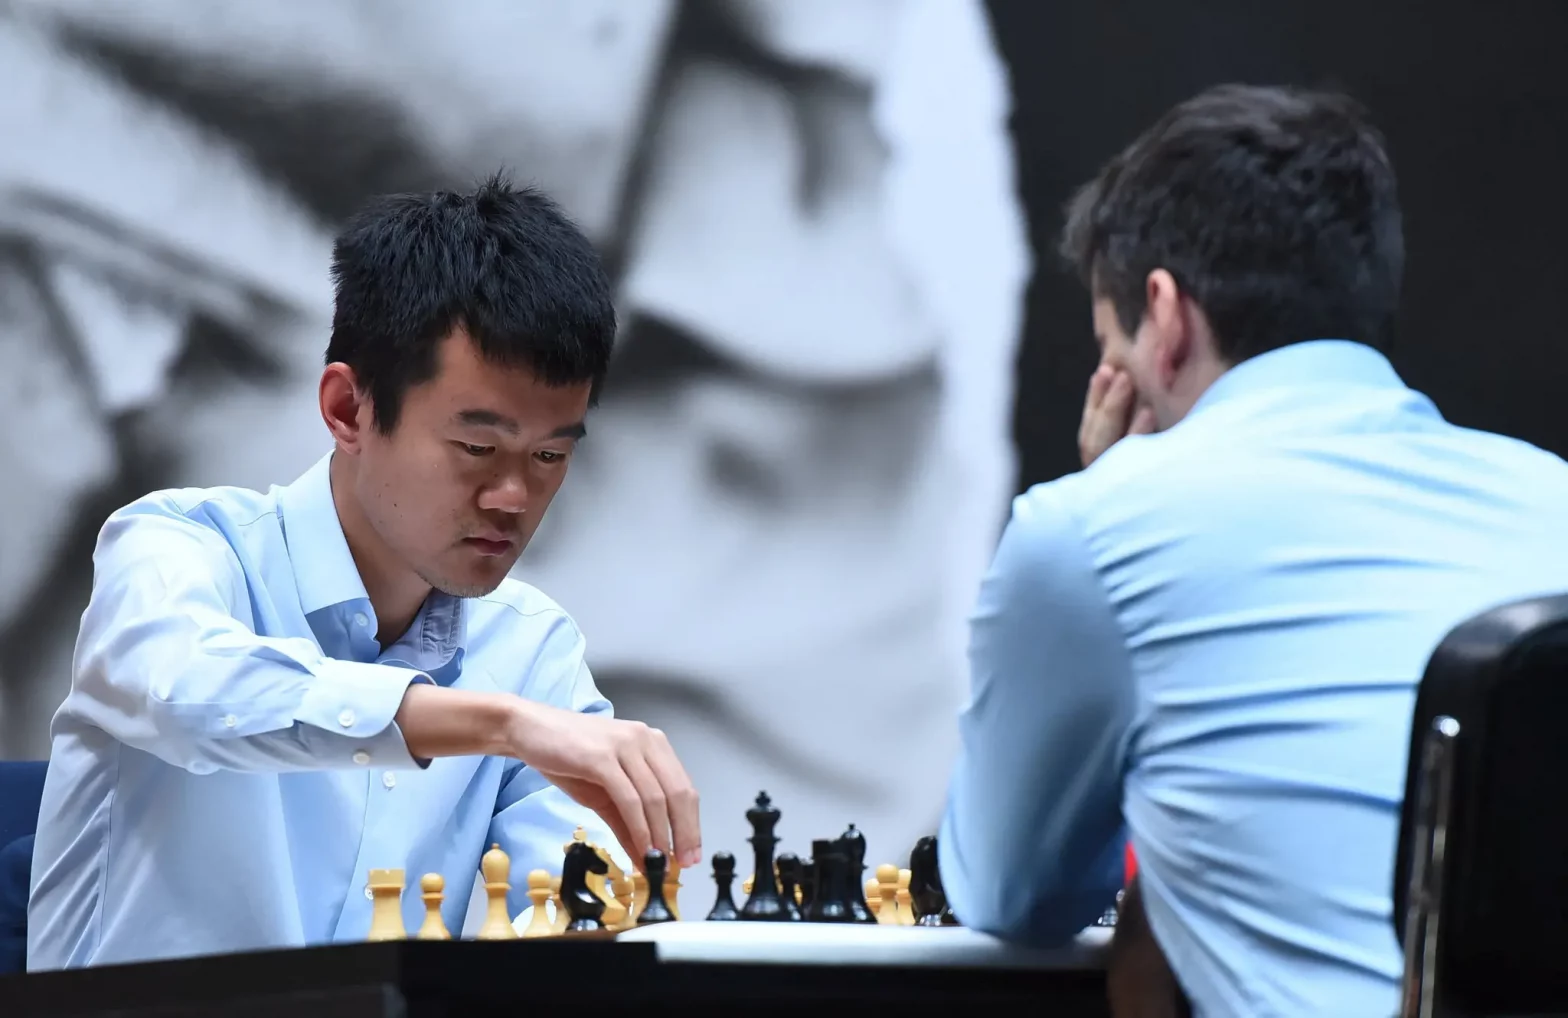 Ding Liren of China Wins World Chess Championship